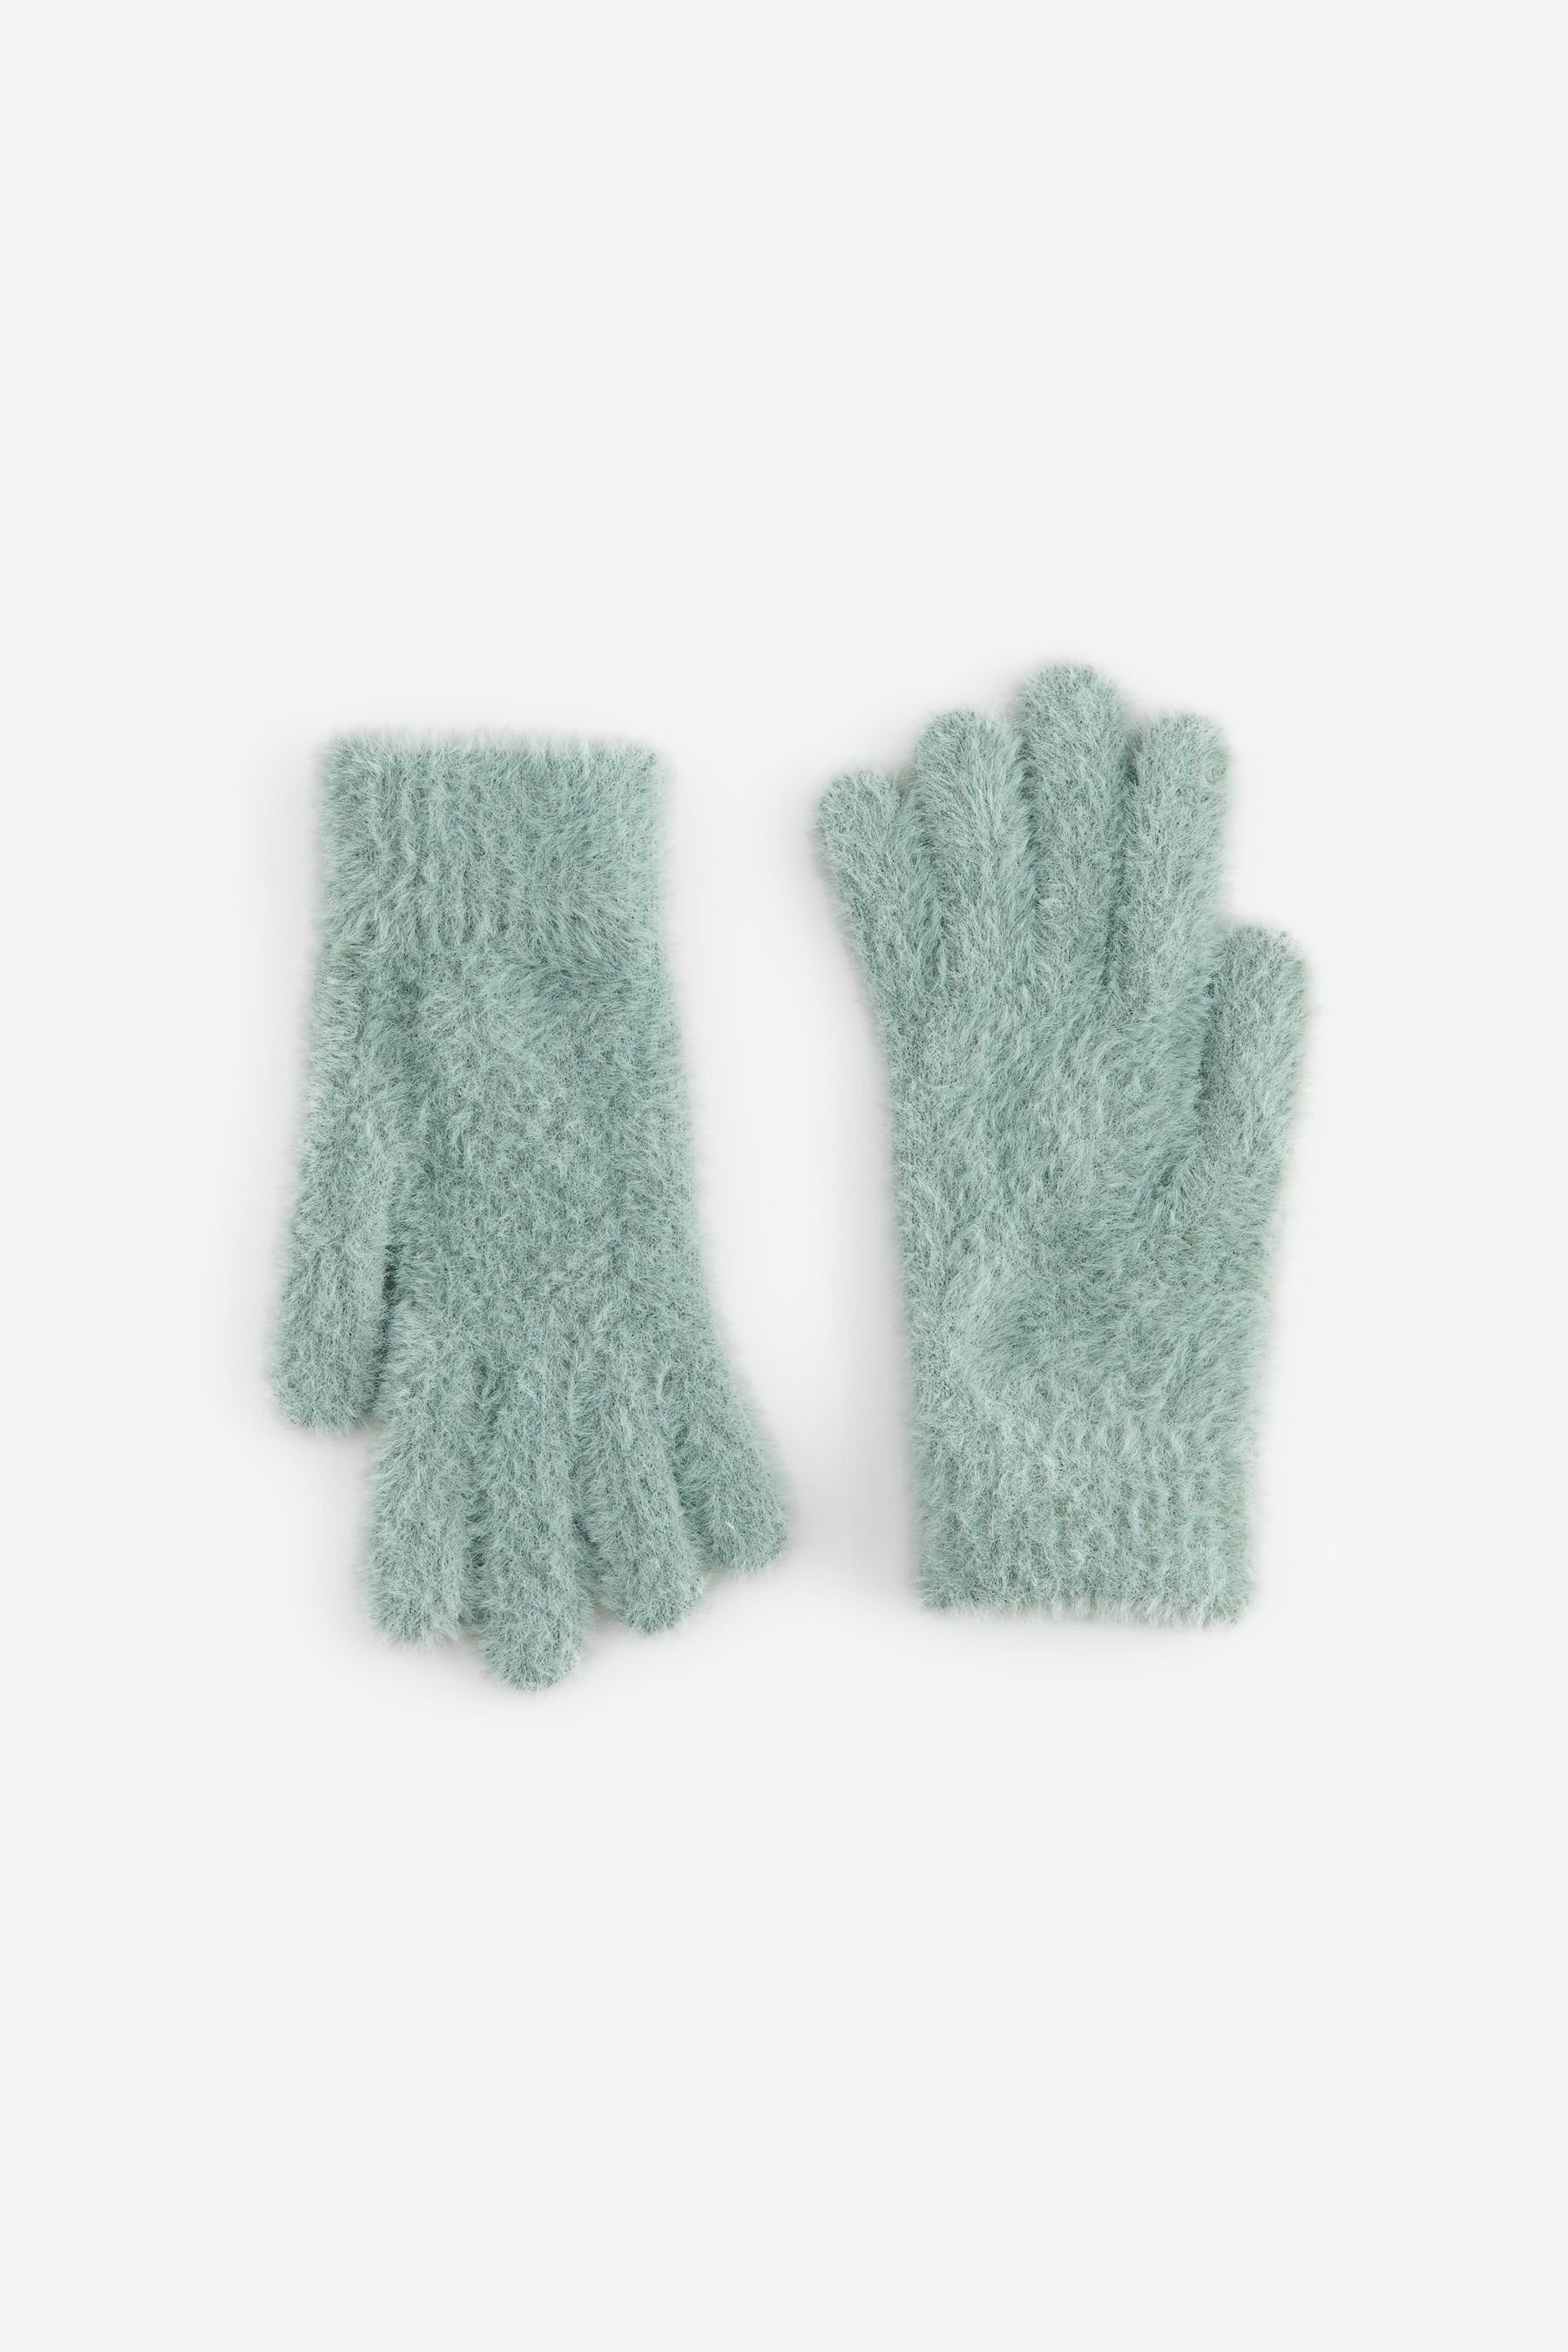 Next Strickhandschuhe Flauschige Green Handschuhe Sage